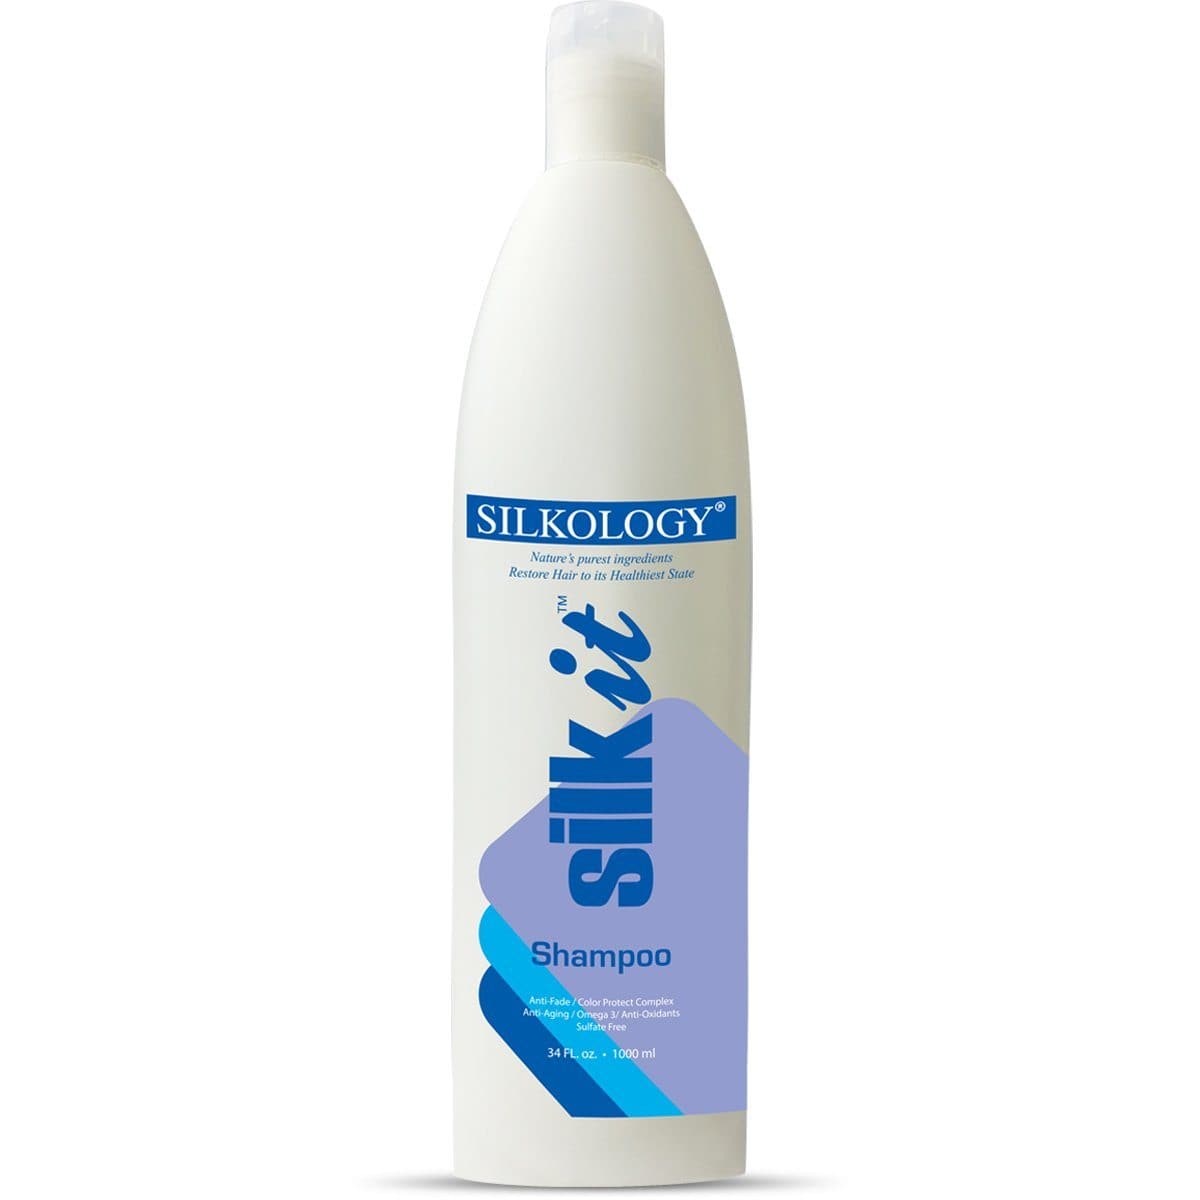 SilkIt Shampoo | SILKOLOGY - SH Salons